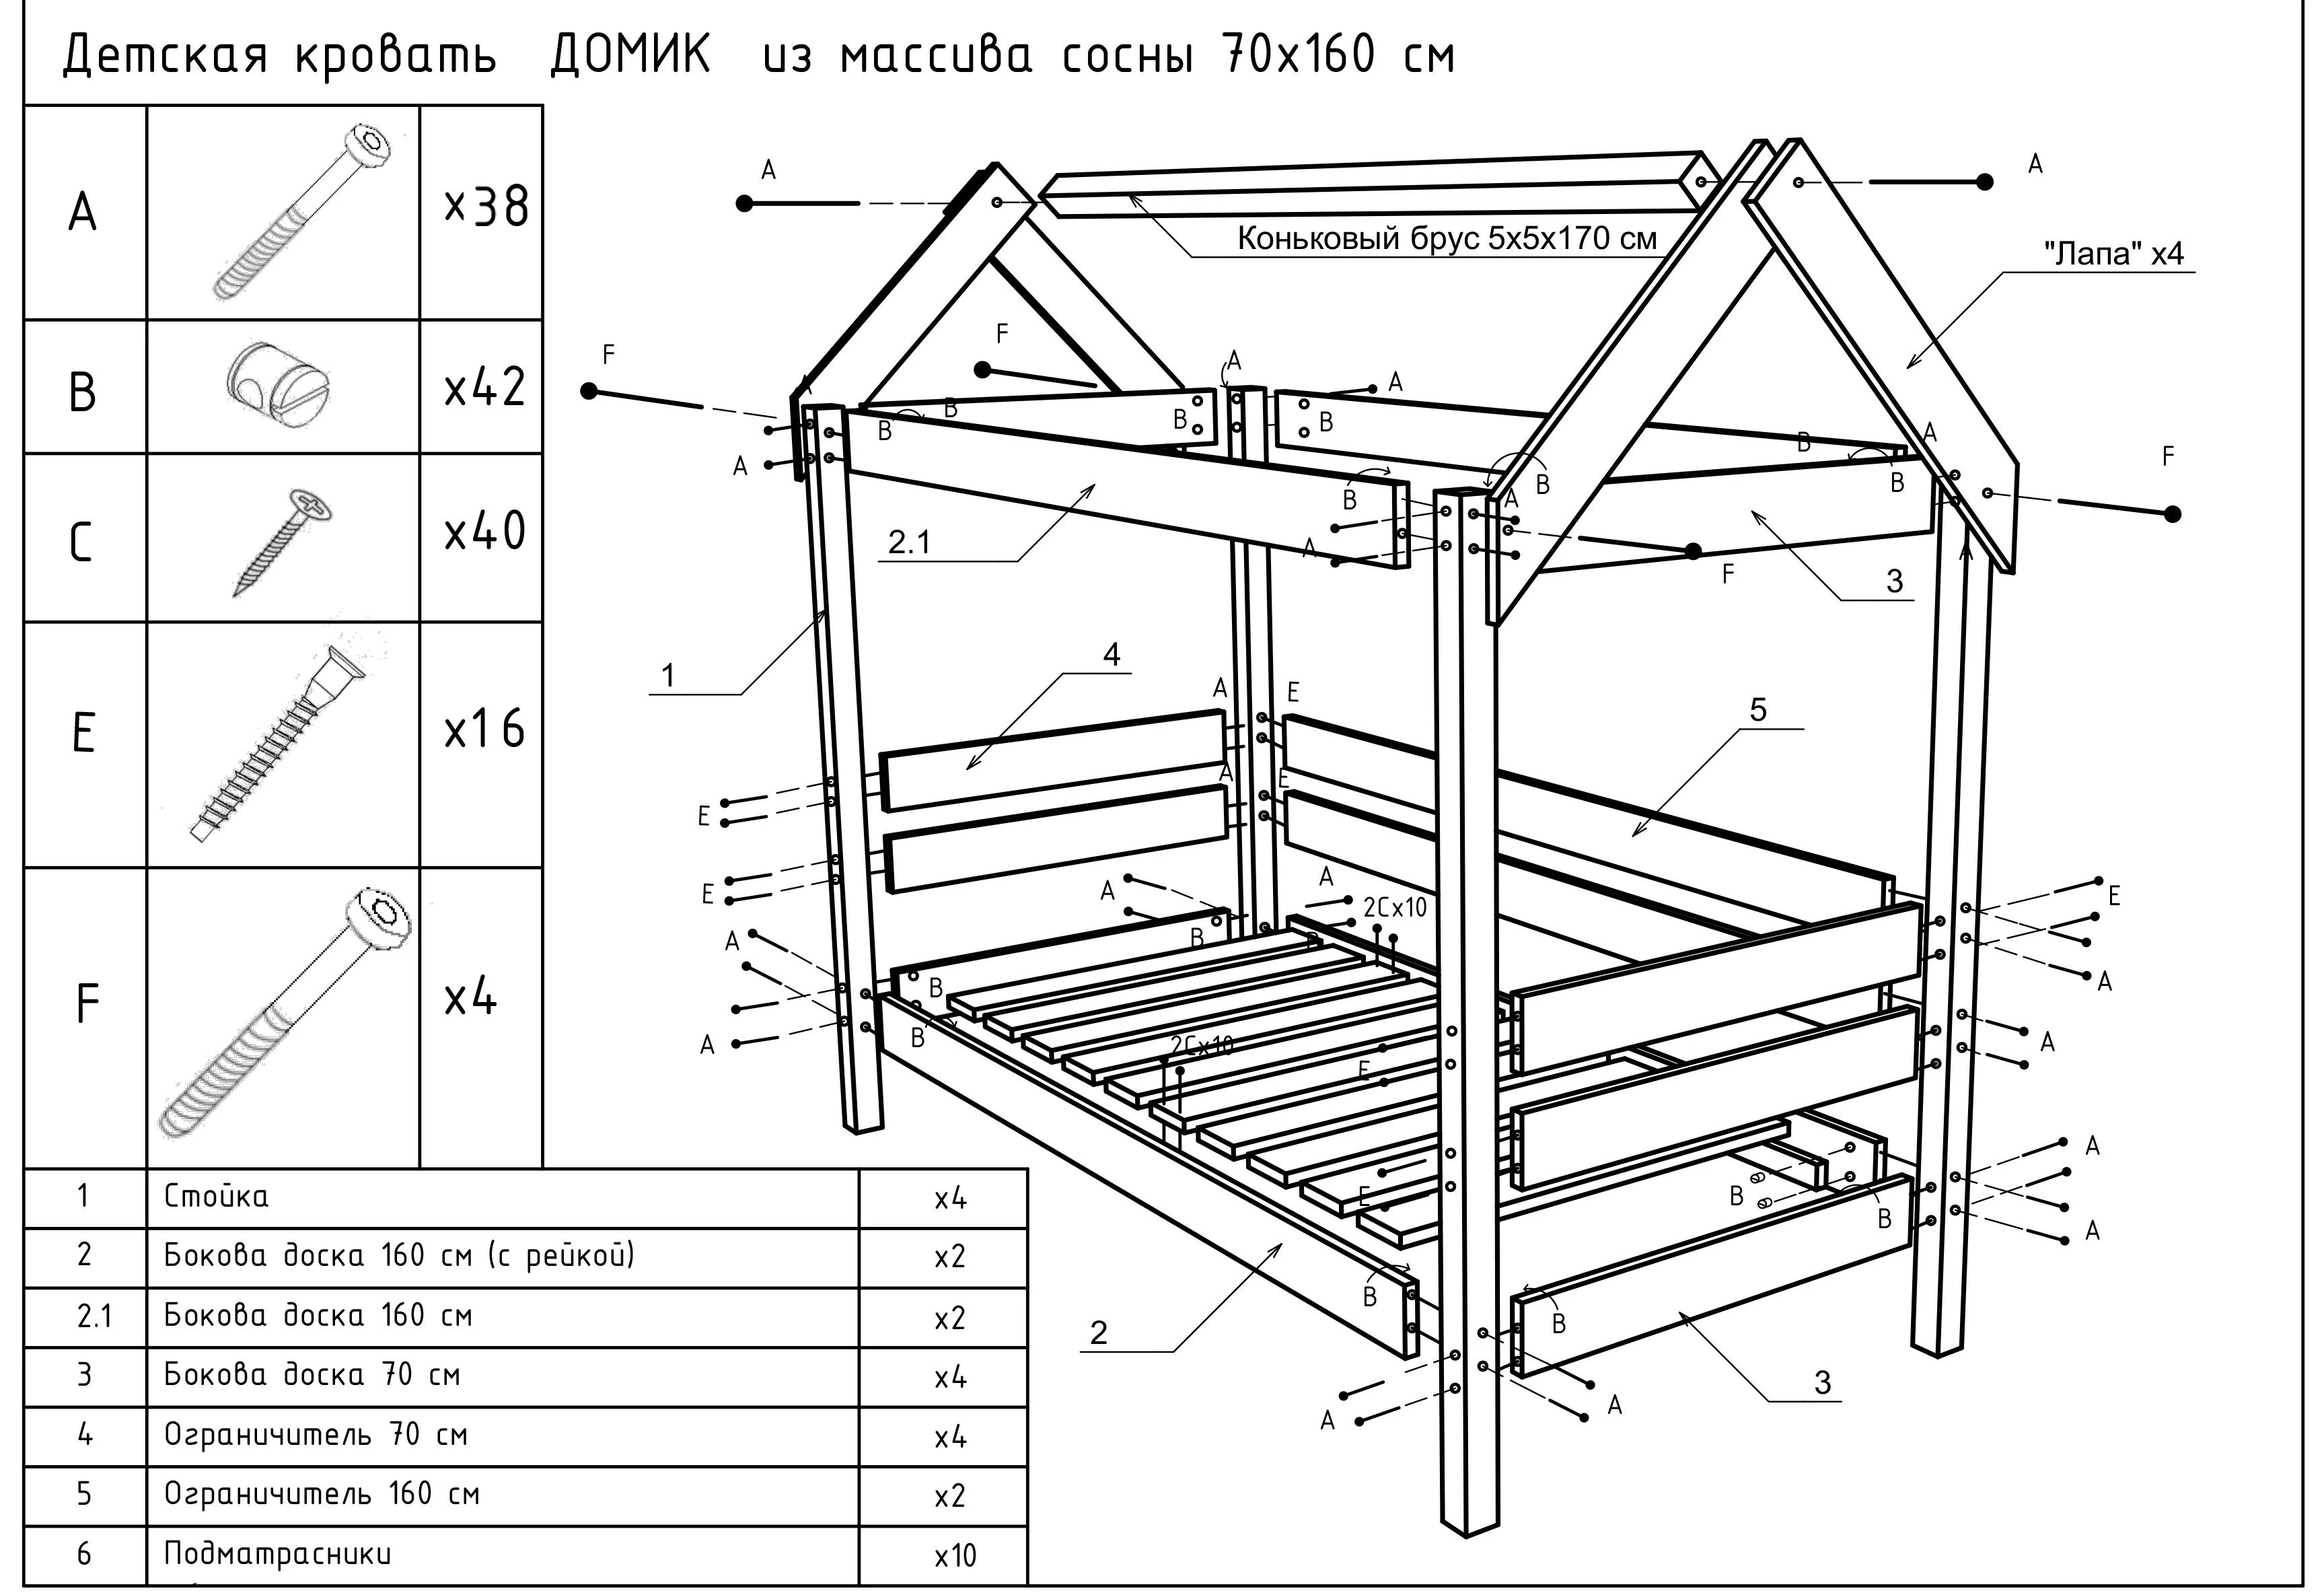 Кровать домик инструкция по сборке